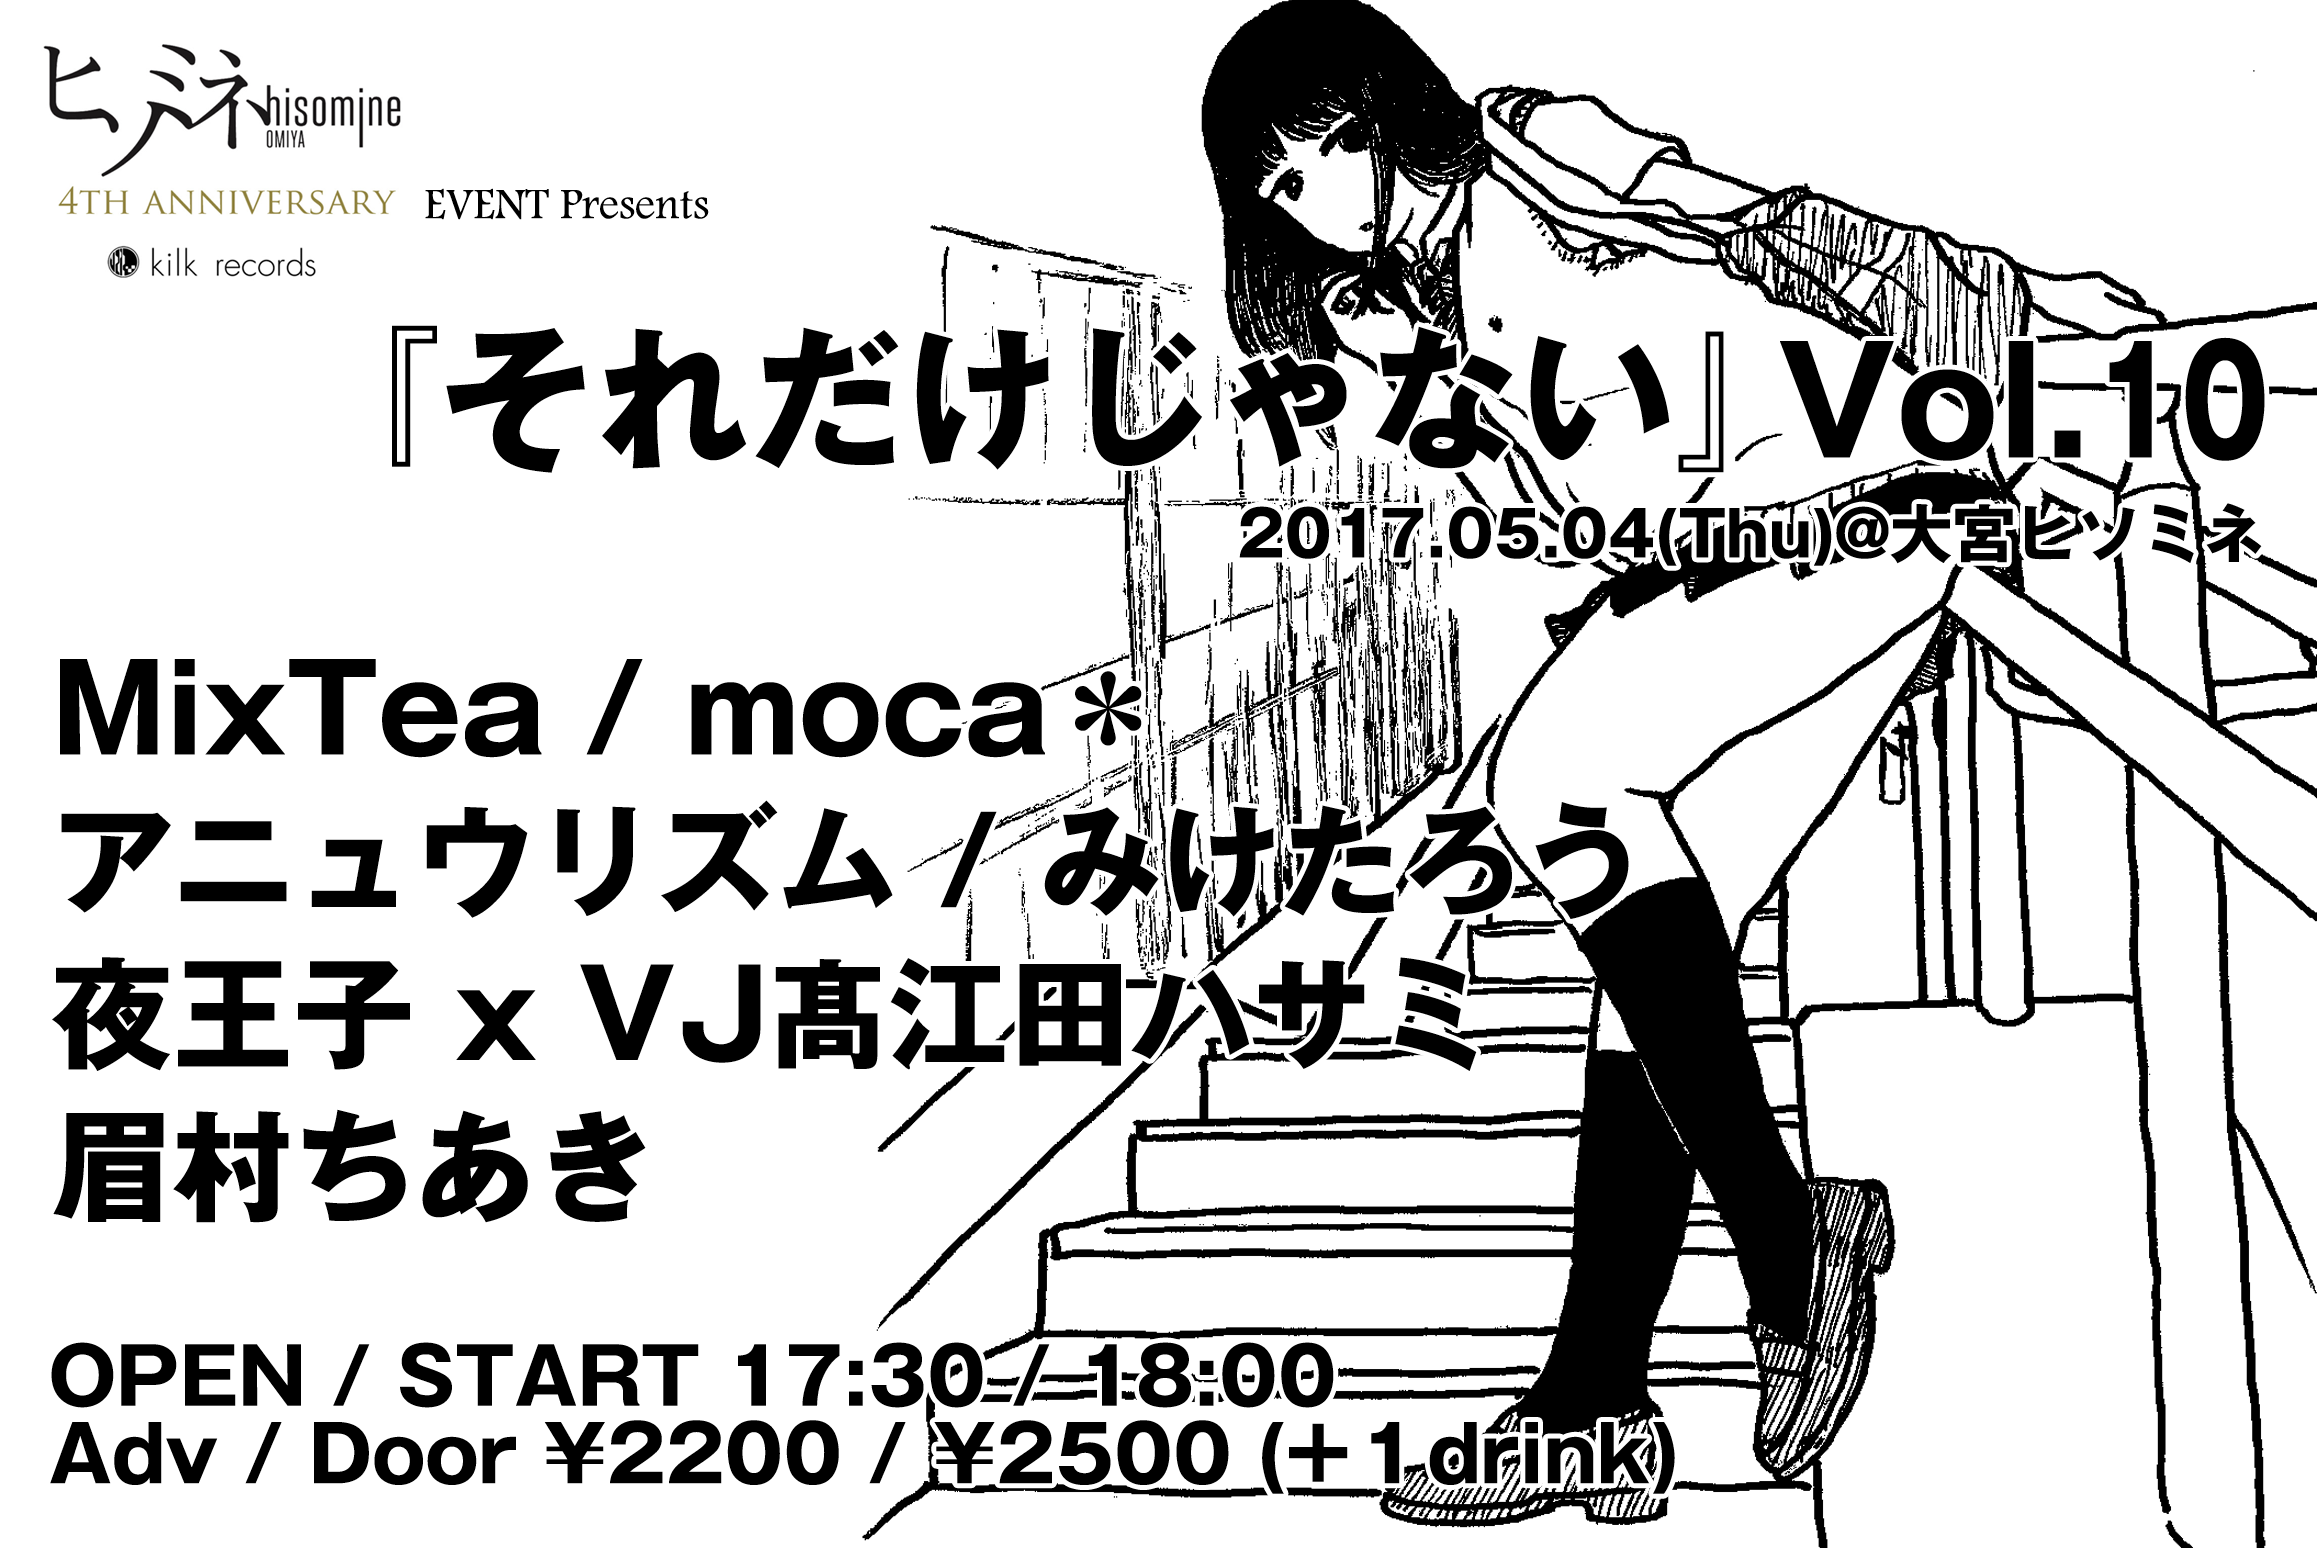 ヒソミネ 4th ANNIVERSARY EVENT Presents ''『それだけじゃない』Vol.10 ''